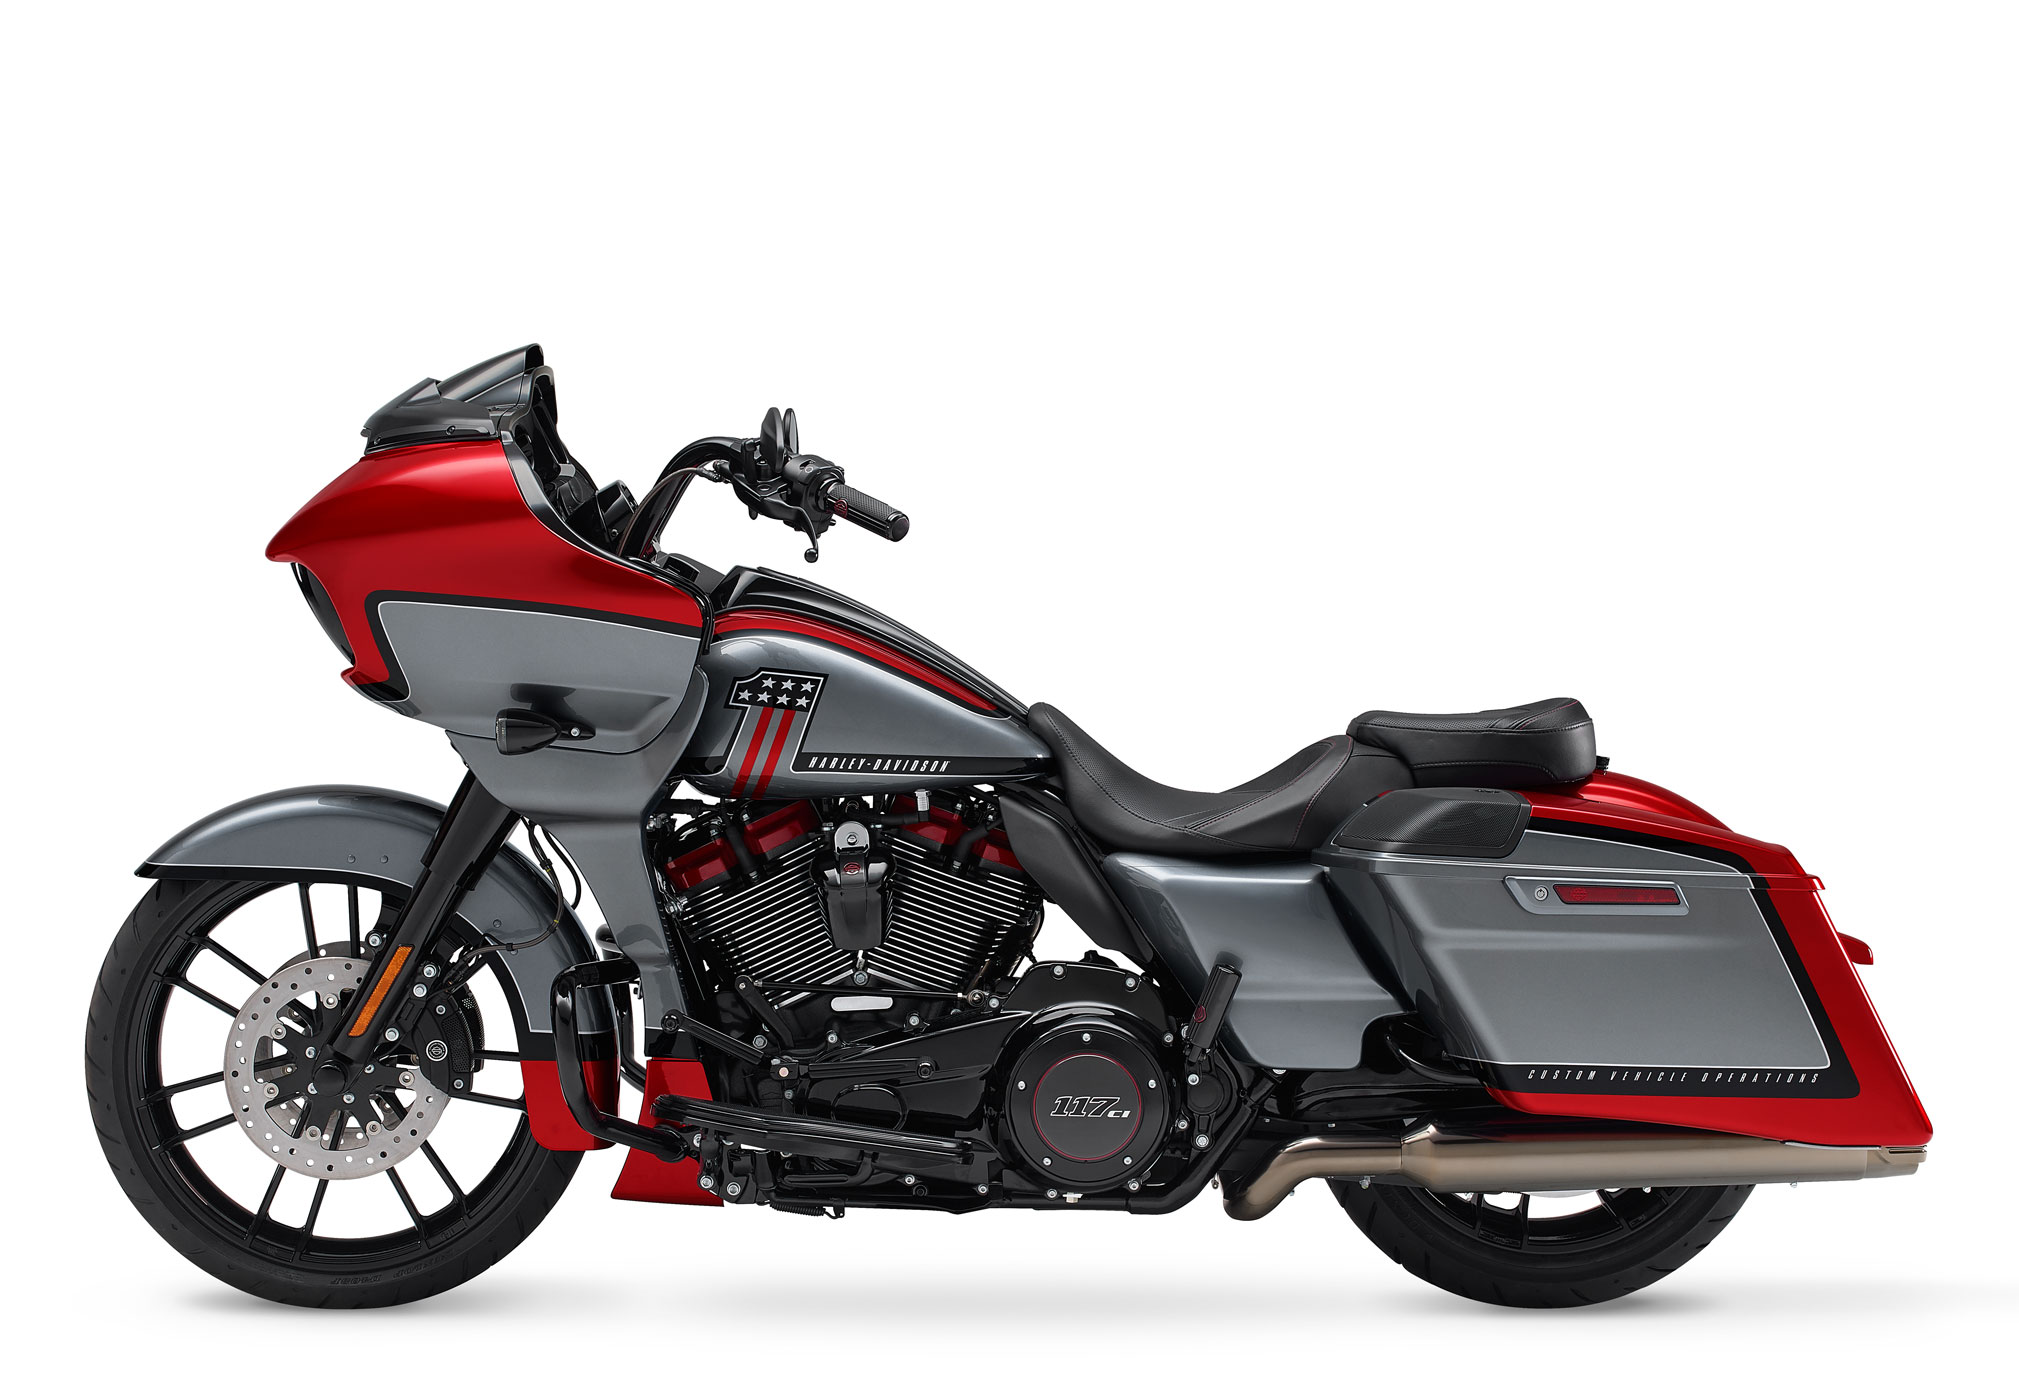 2019 Harley Davidson Road Glide Special For Sale Off 70 Medpharmres Com